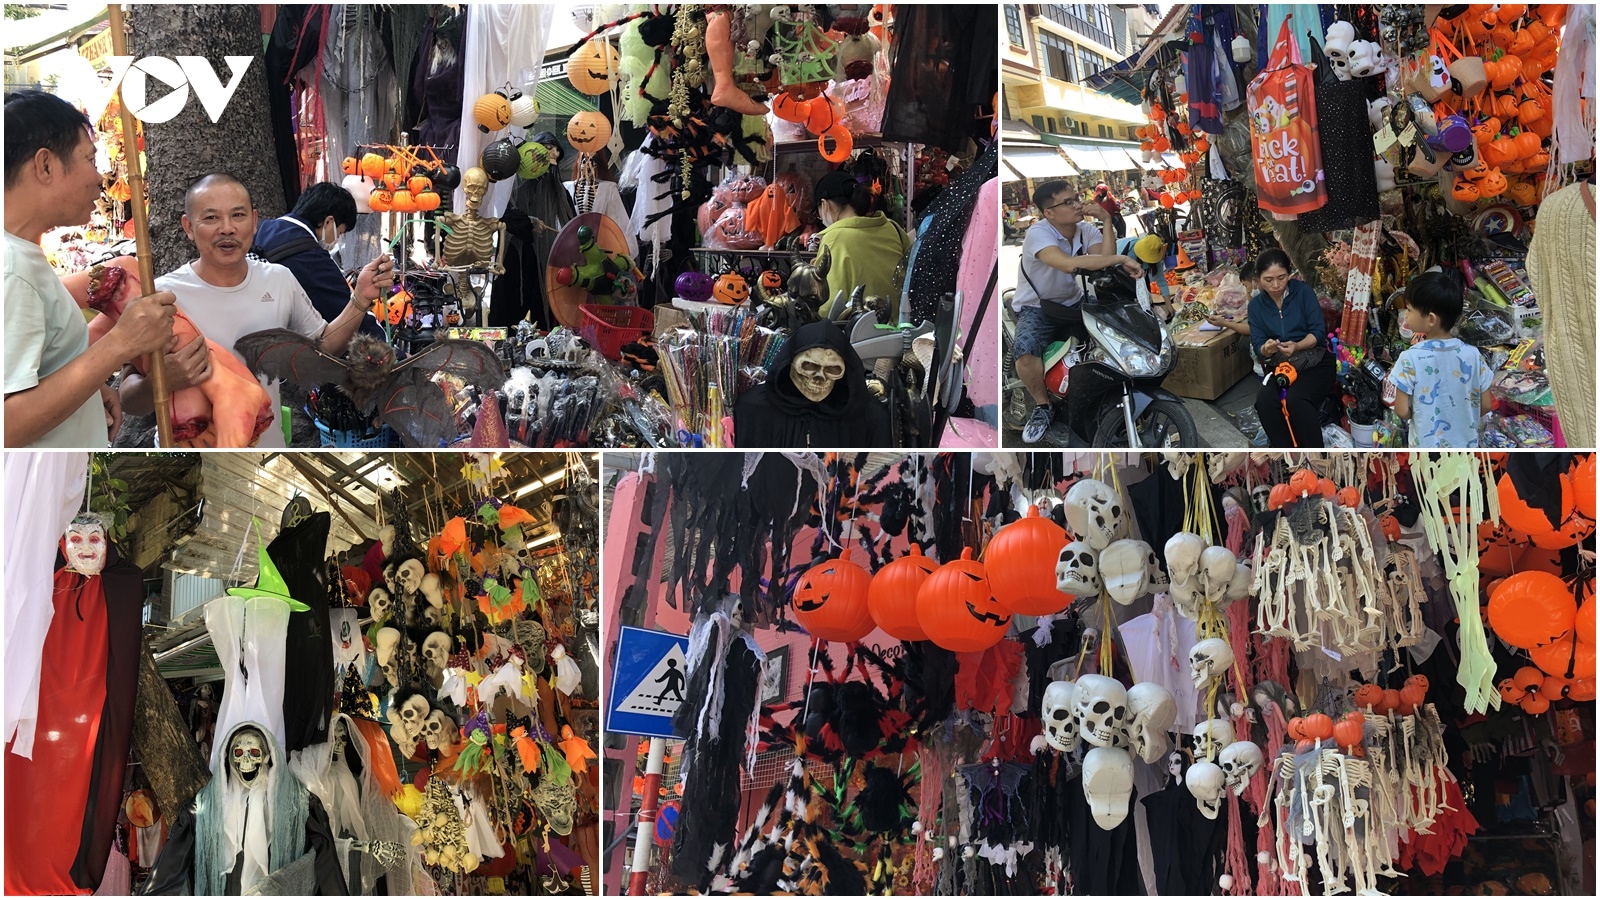 "Thủ phủ" đồ hóa trang kinh dị hút khách dịp lễ hội Halloween